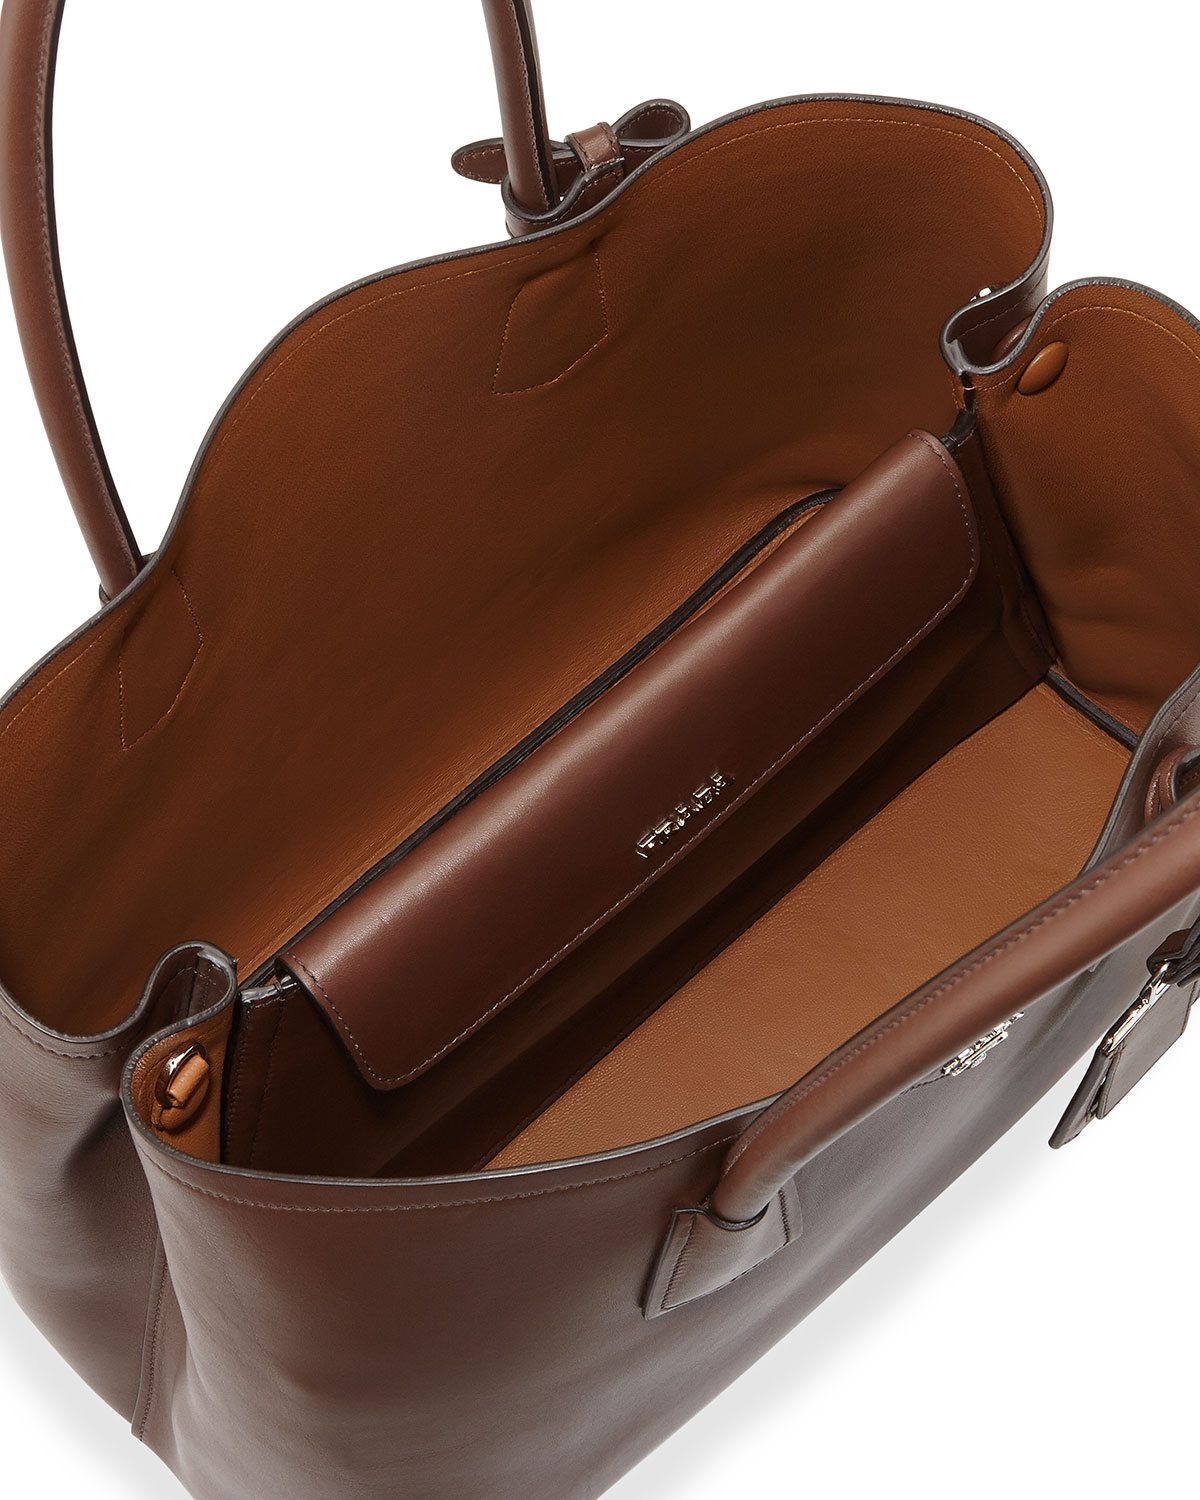 prada copy - Prada City Calf Double Bag in Brown (Brown (Cacao)) | Lyst